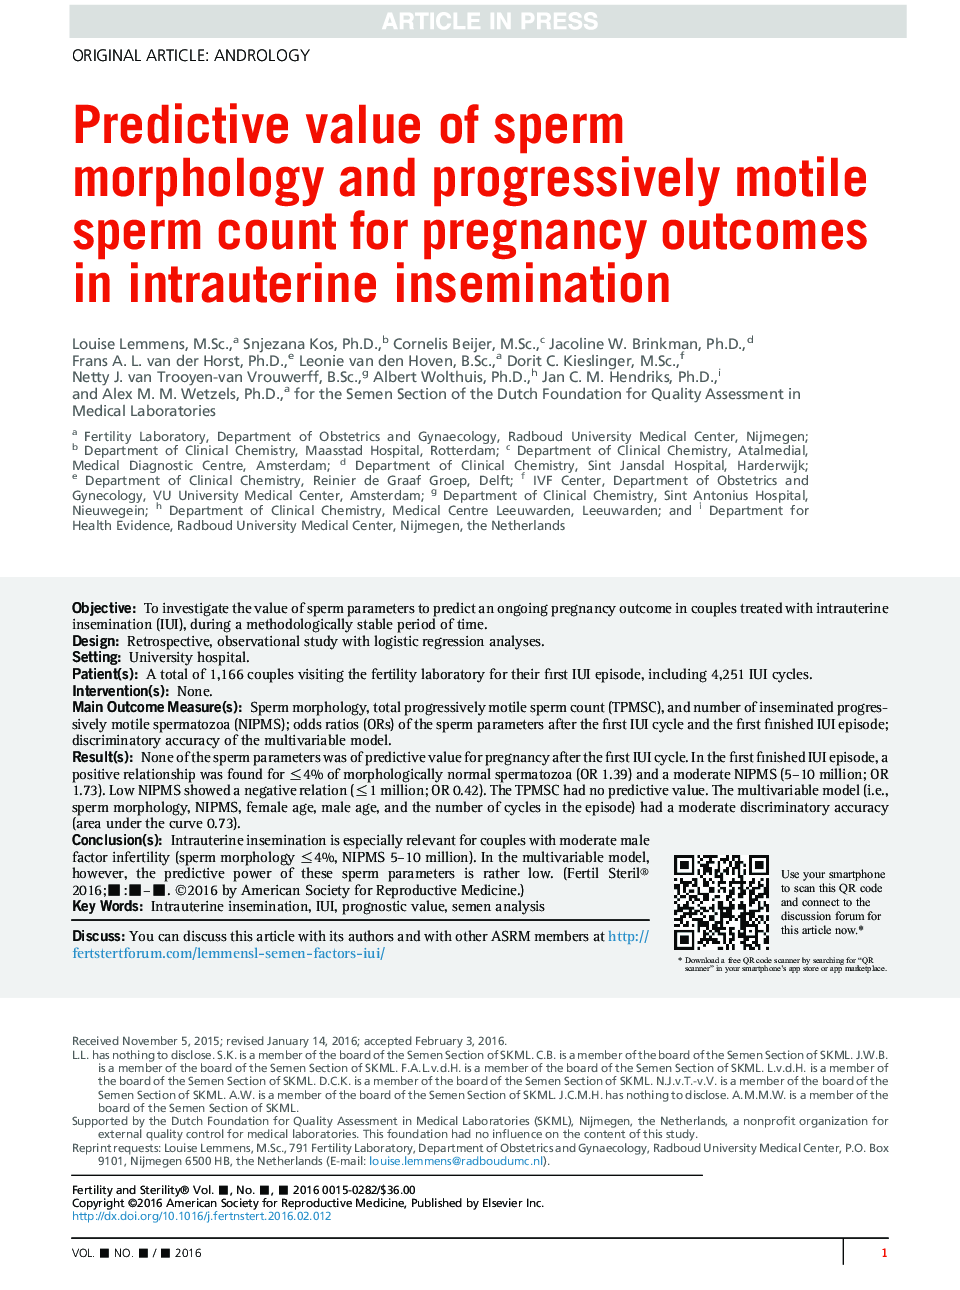 ارزش پیش بینی کننده مورفولوژی اسپرم و شمارش اسپرم به طور پیوسته حرکتی برای نتایج حاملگی در تلقیح داخل رحمی 